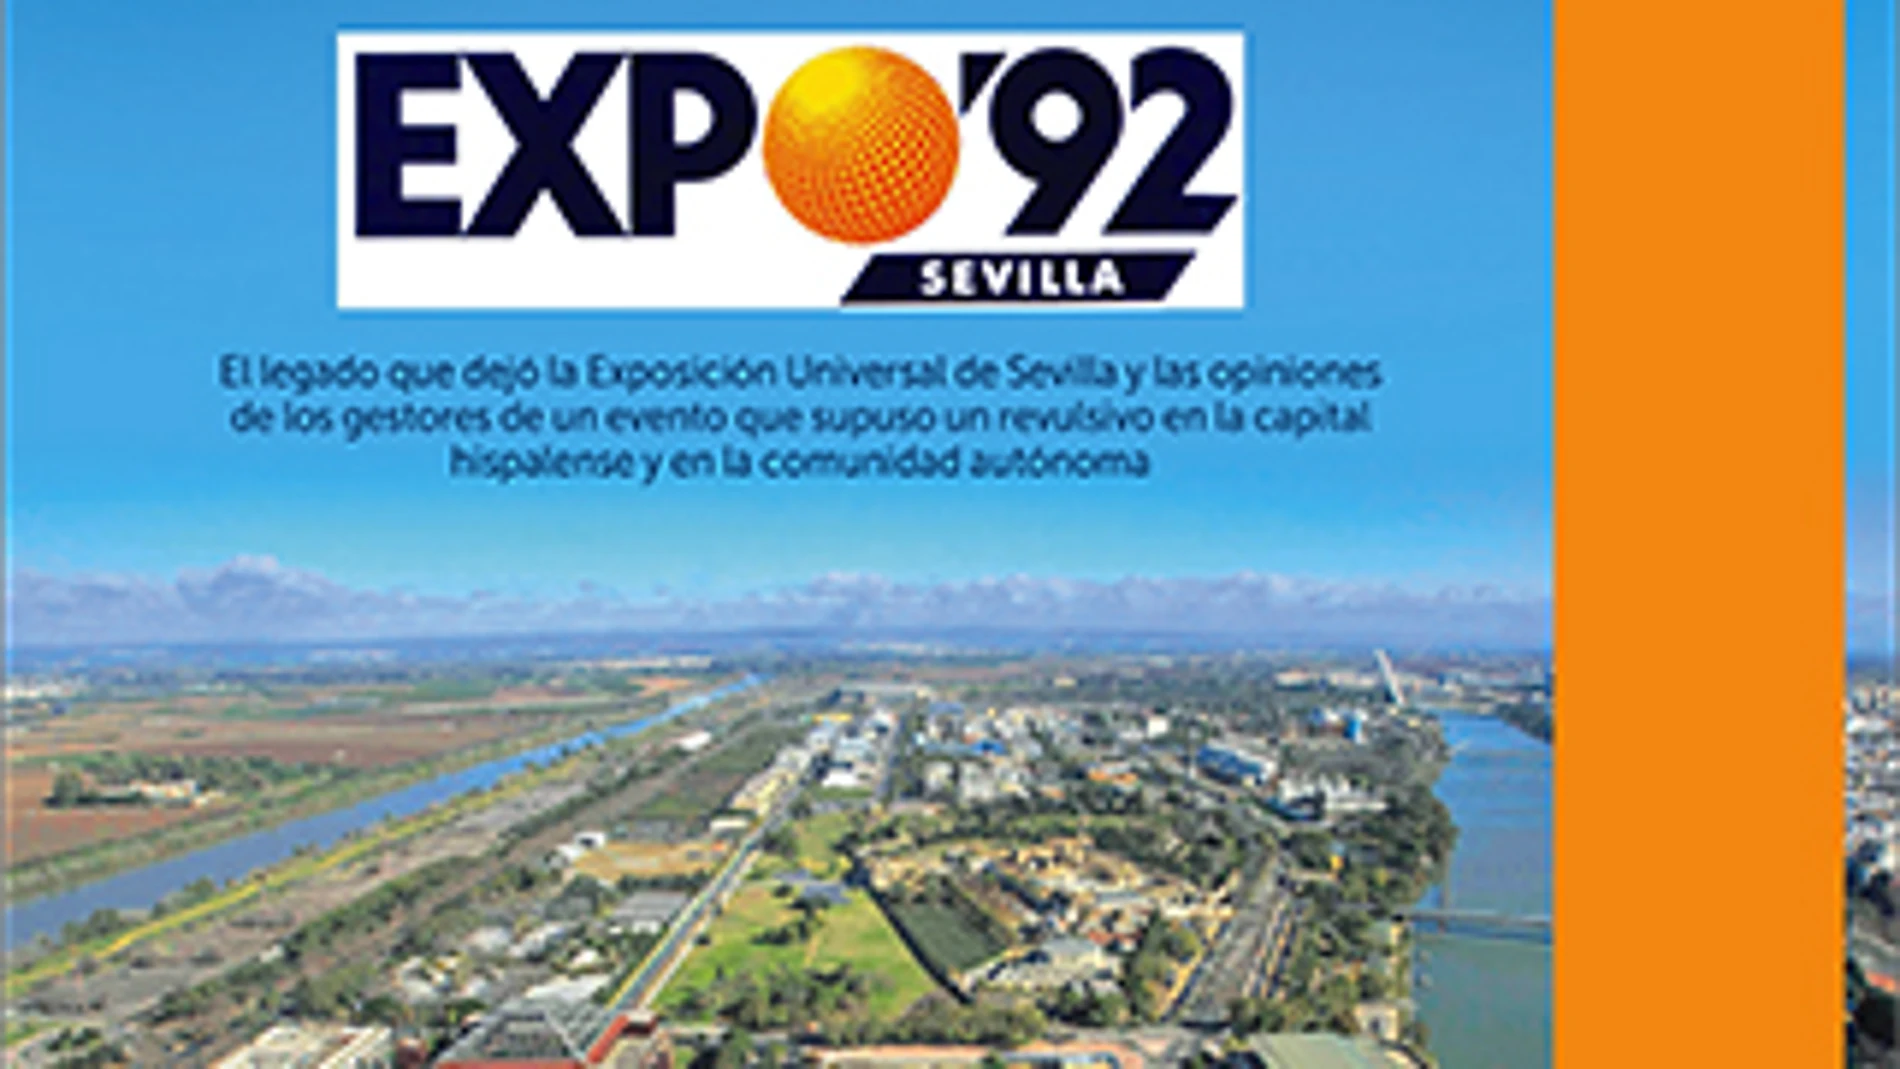 25 Años de la Expo ‘92